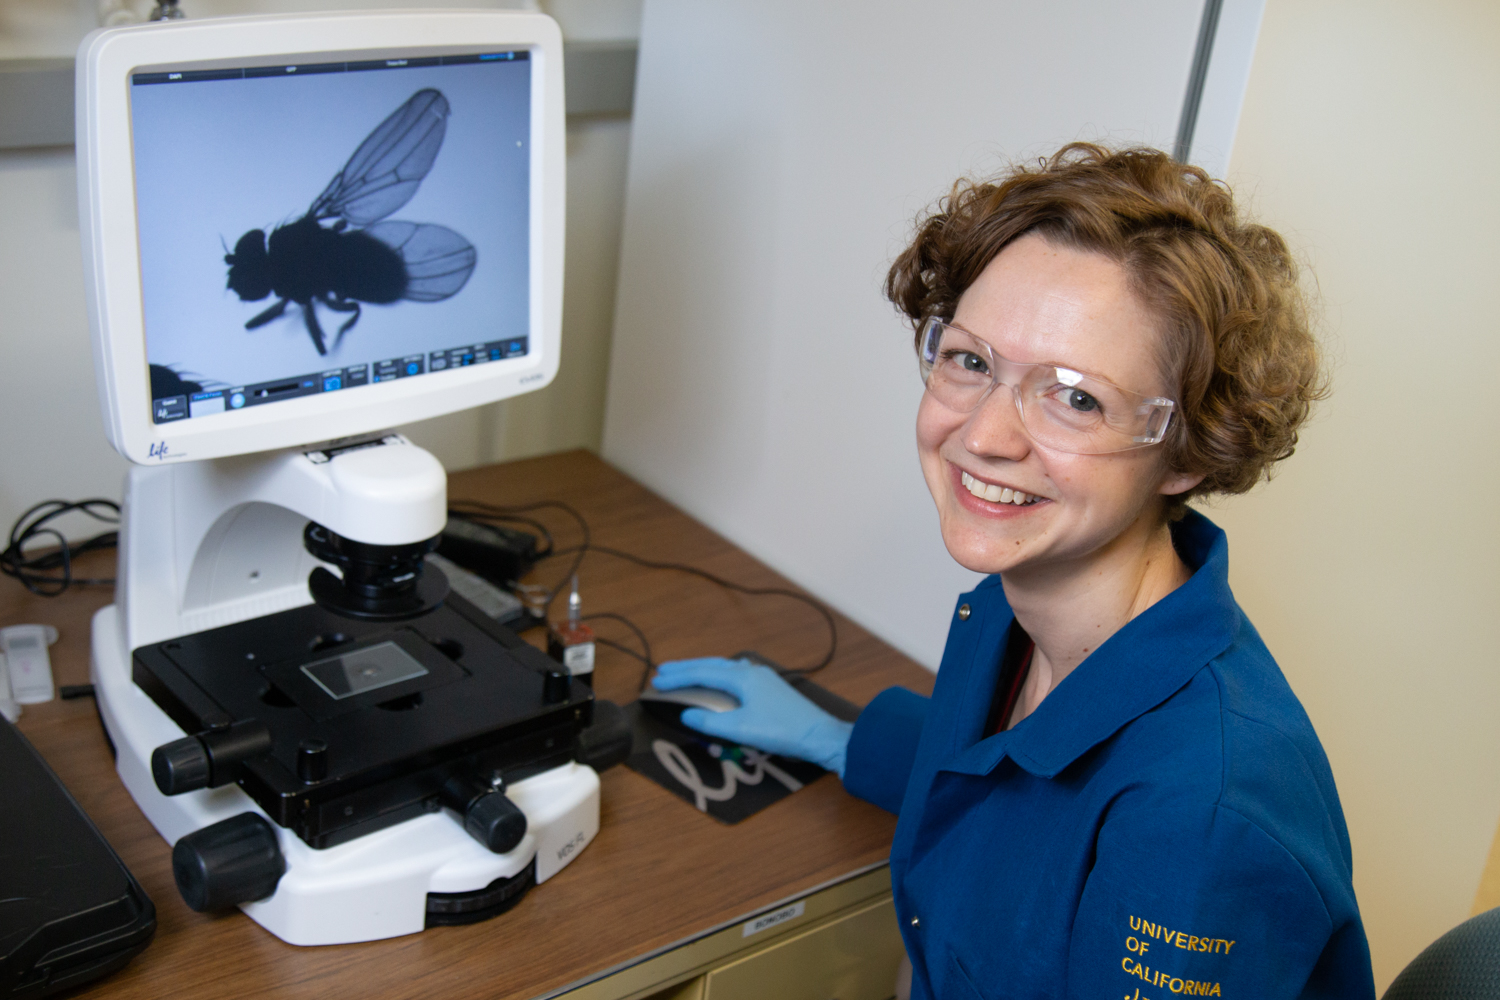 Kassandra Ori-McKenney images a fly in her lab. David Slipher/UC Davis